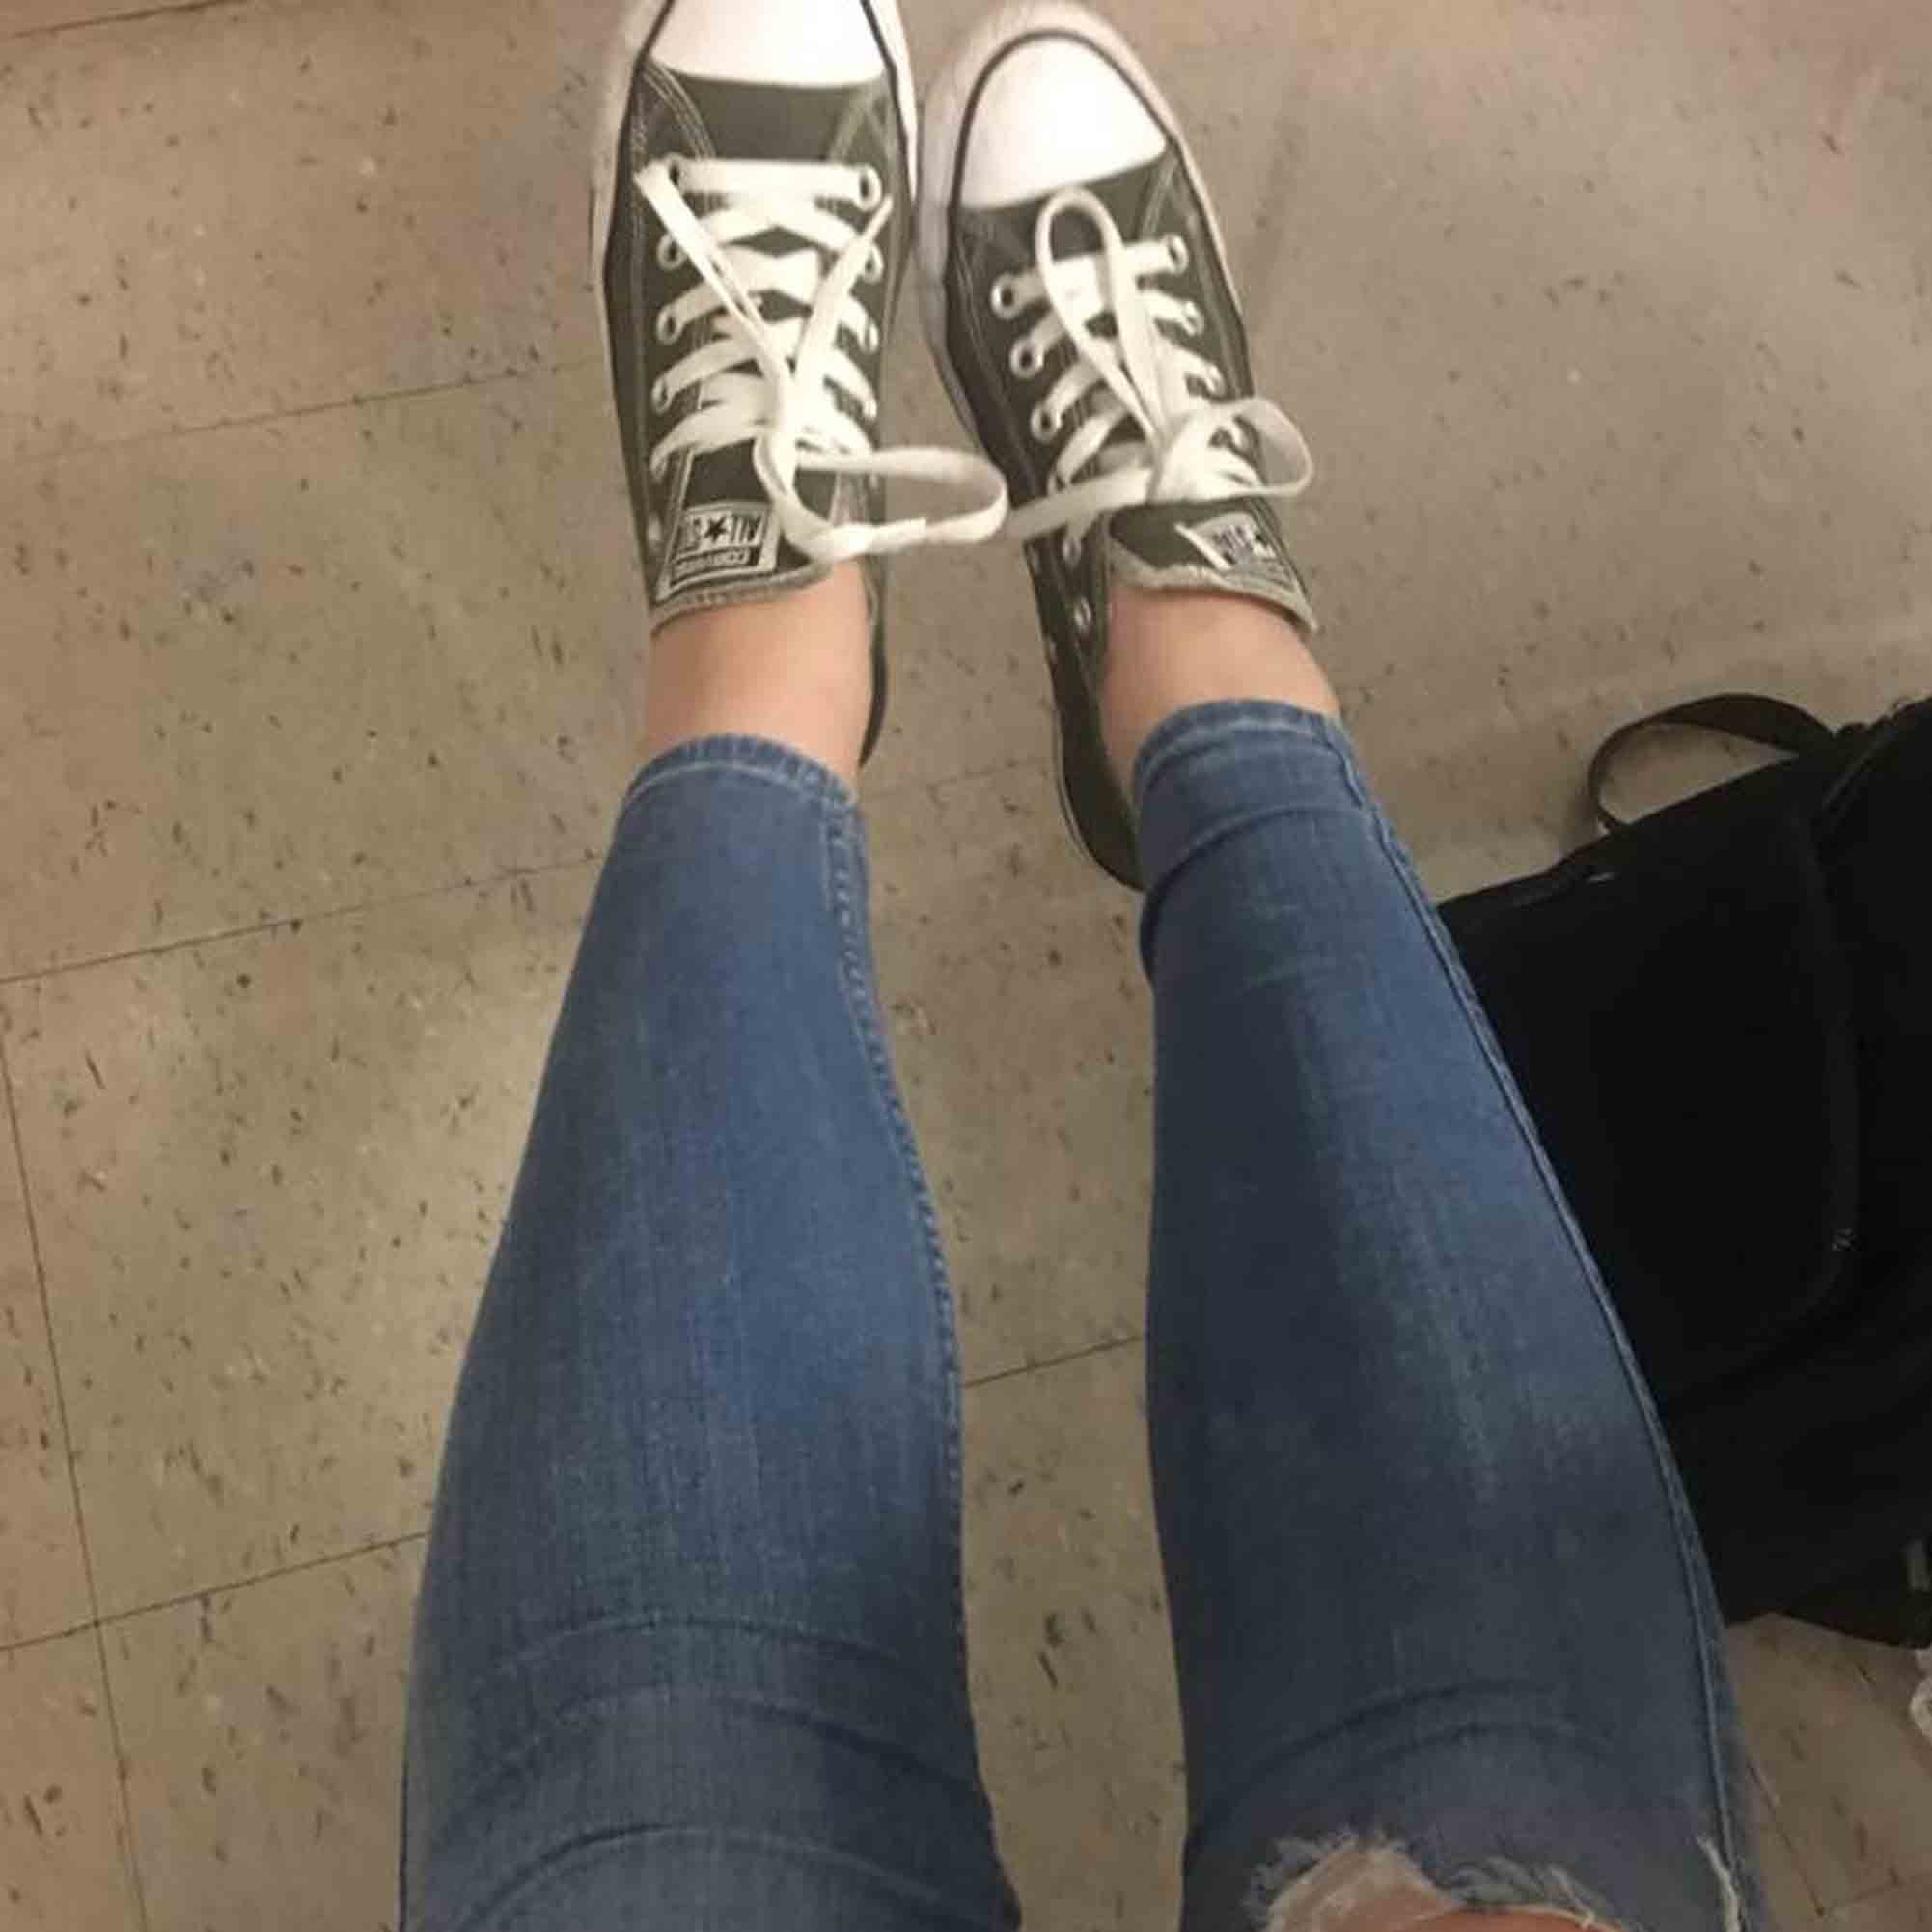 Girl Broke School Dress Code by Having a Hole in Her Jeans | POPSUGAR ...